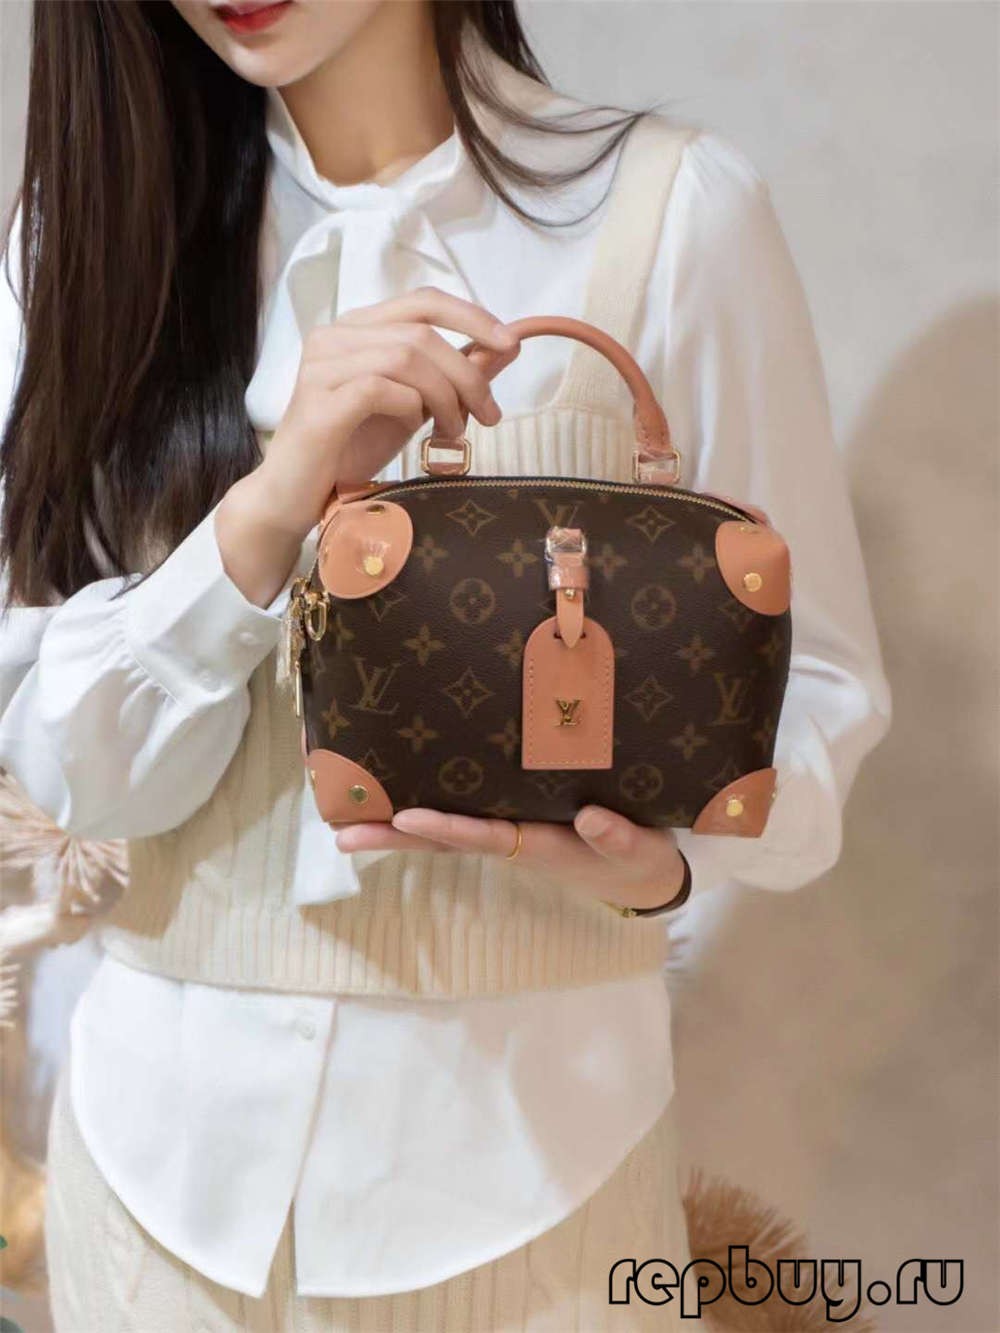 ಲೂಯಿ ವಿಟಾನ್ M45531 PETITE MALLE SOUPLE 20cm ಉನ್ನತ ಪ್ರತಿಕೃತಿ ಚೀಲಗಳು (2022 ವಿಶೇಷ)-Best Quality Fake Louis Vuitton Bag Online Store, Replica designer bag ru